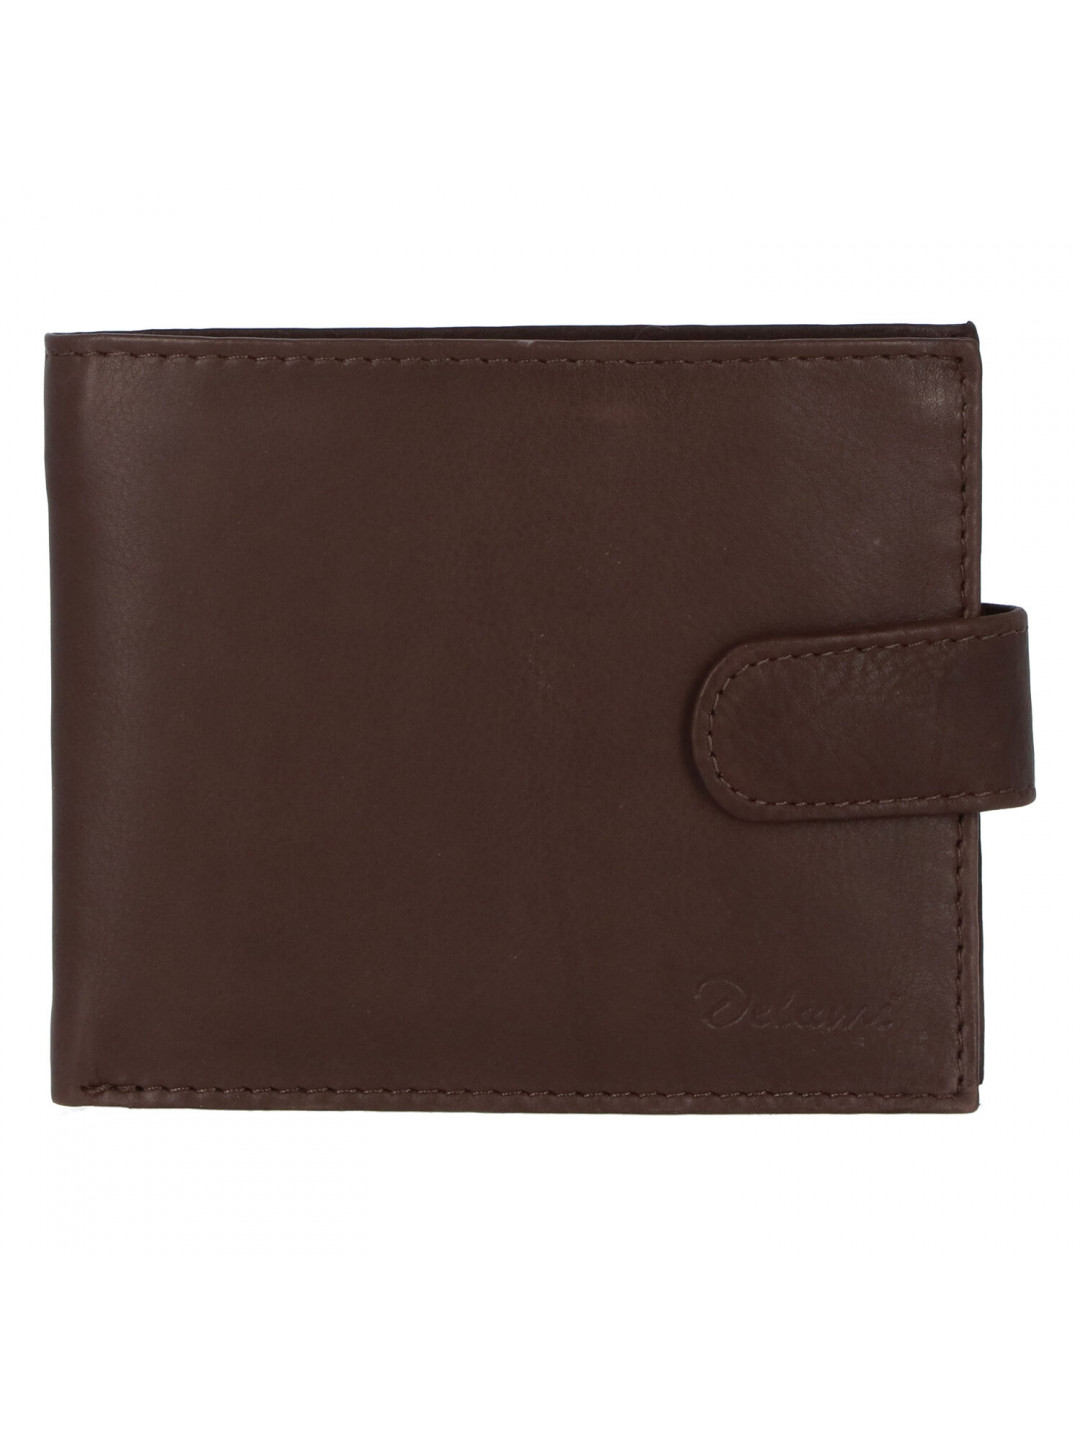 Pánská kožená hnědá peněženka – Delami 9371